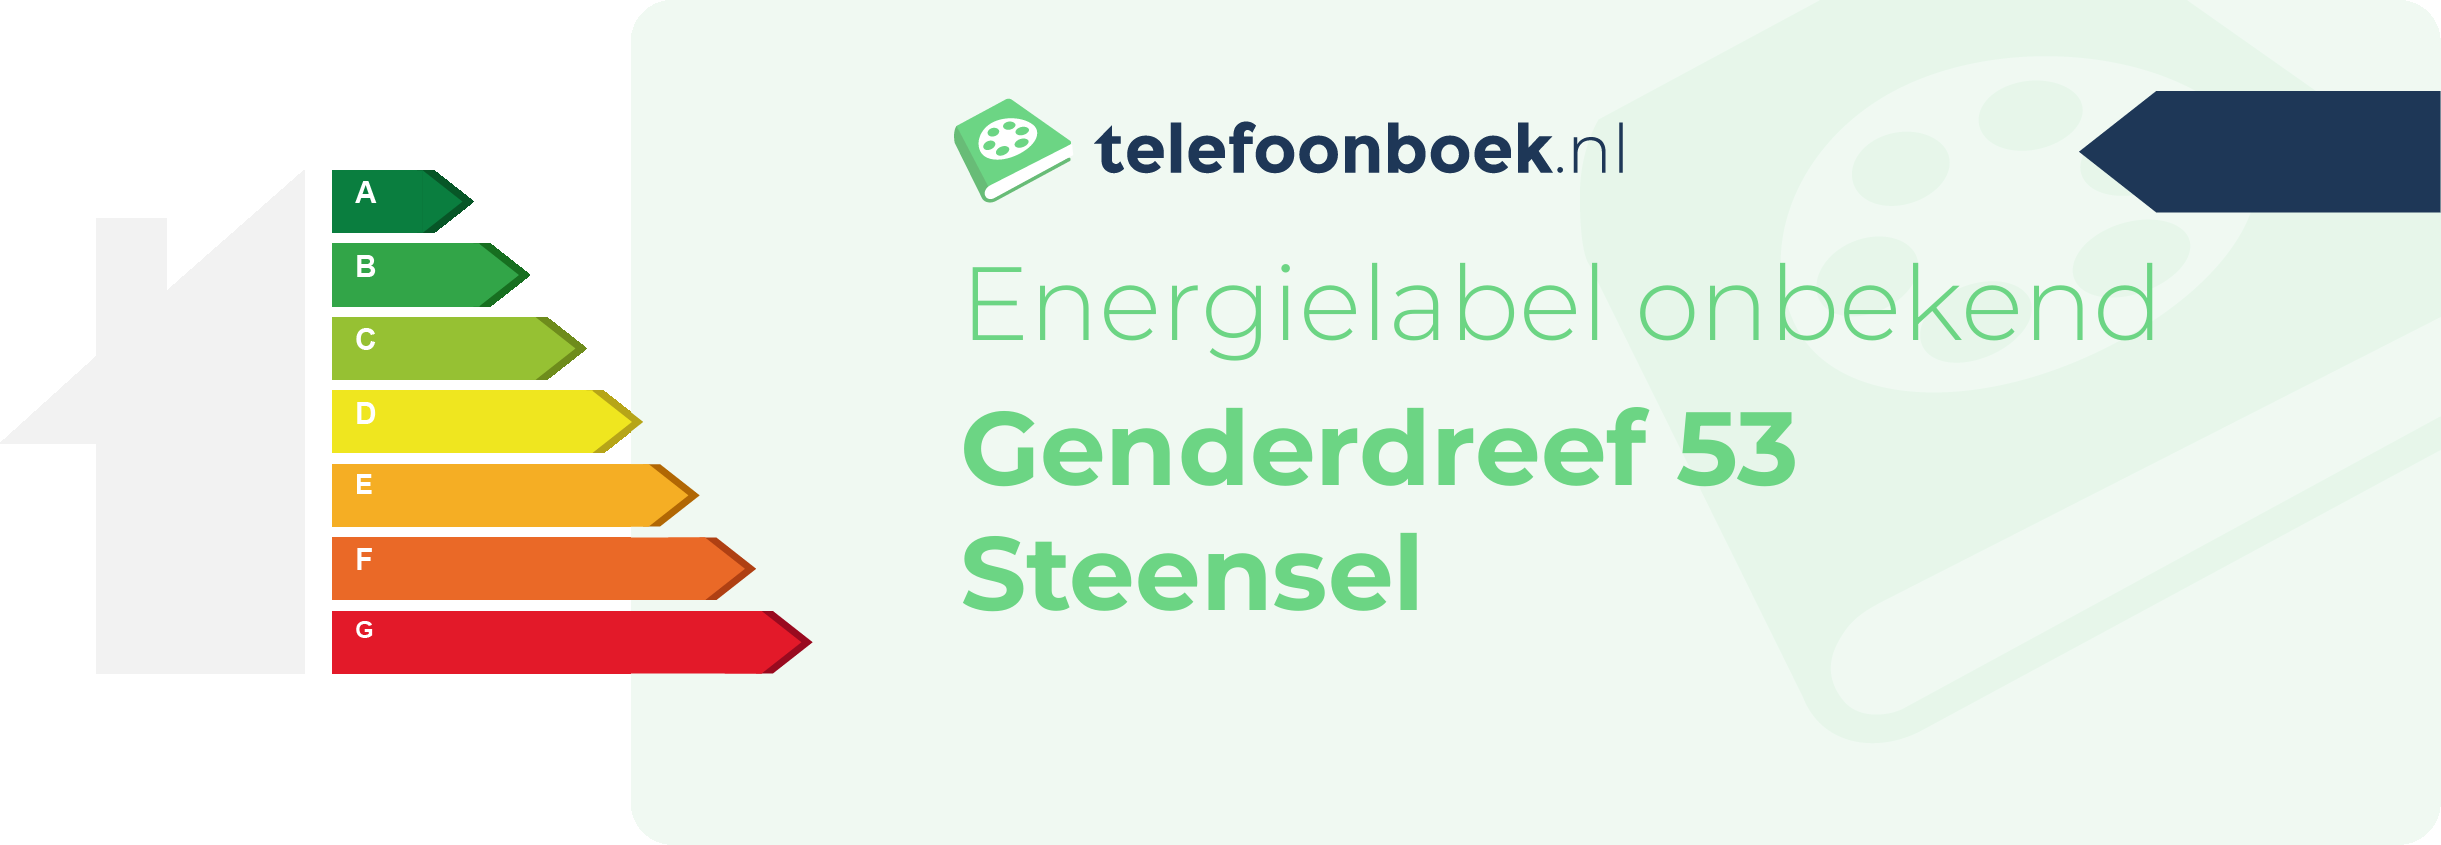 Energielabel Genderdreef 53 Steensel